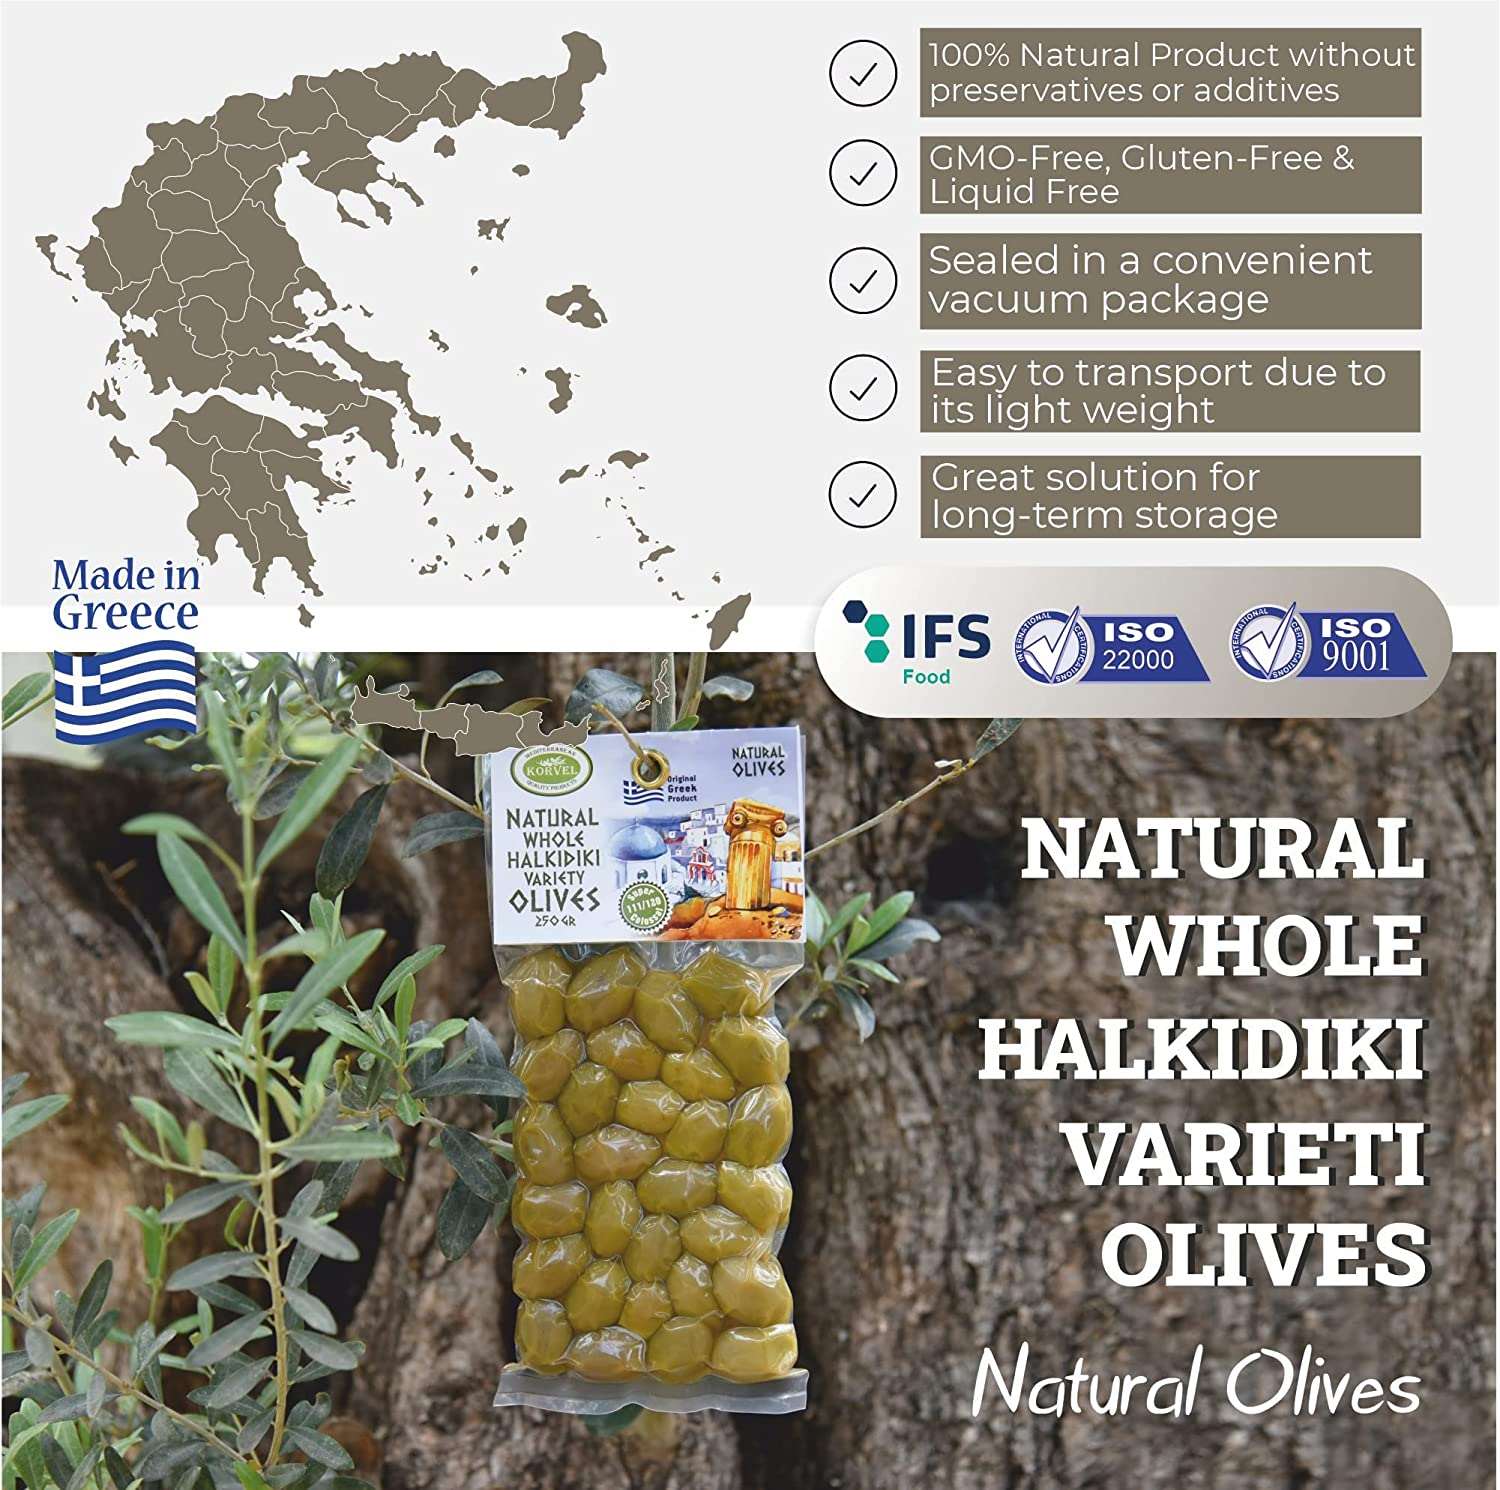 KORVEL Greek Olives - Halkidiki + Green Olives - set of two packs 2 x 0.55 lb - 1.1 lb